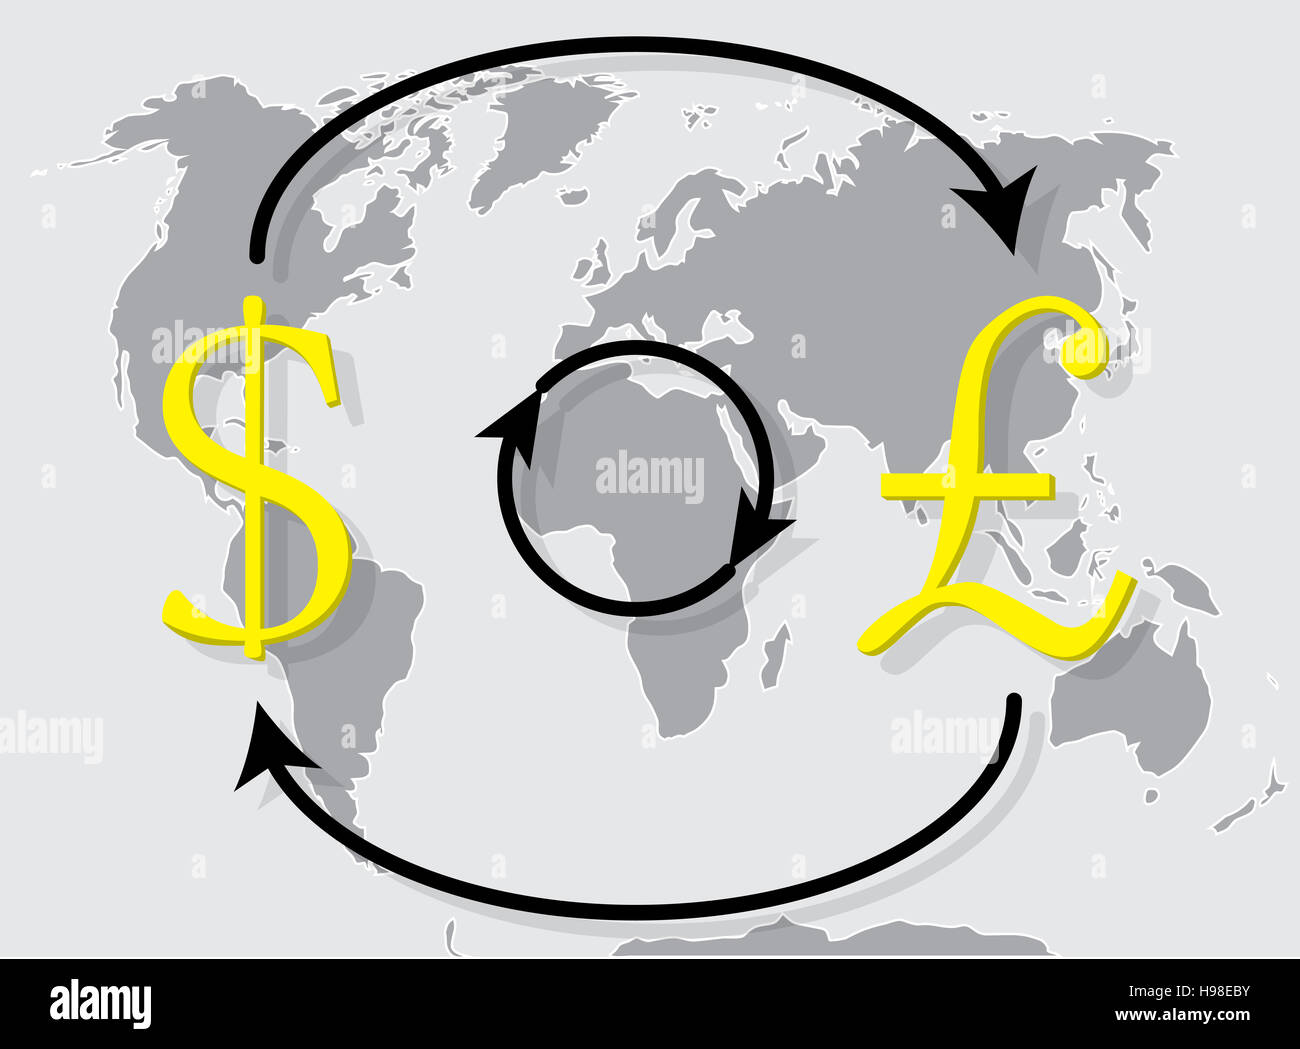 Währung Austausch Pfund Dollar auf Welt Kartenhintergrund. Exchange-Symbol Handel, Geld Wechselkurs. Vektor-illustration Stockfoto